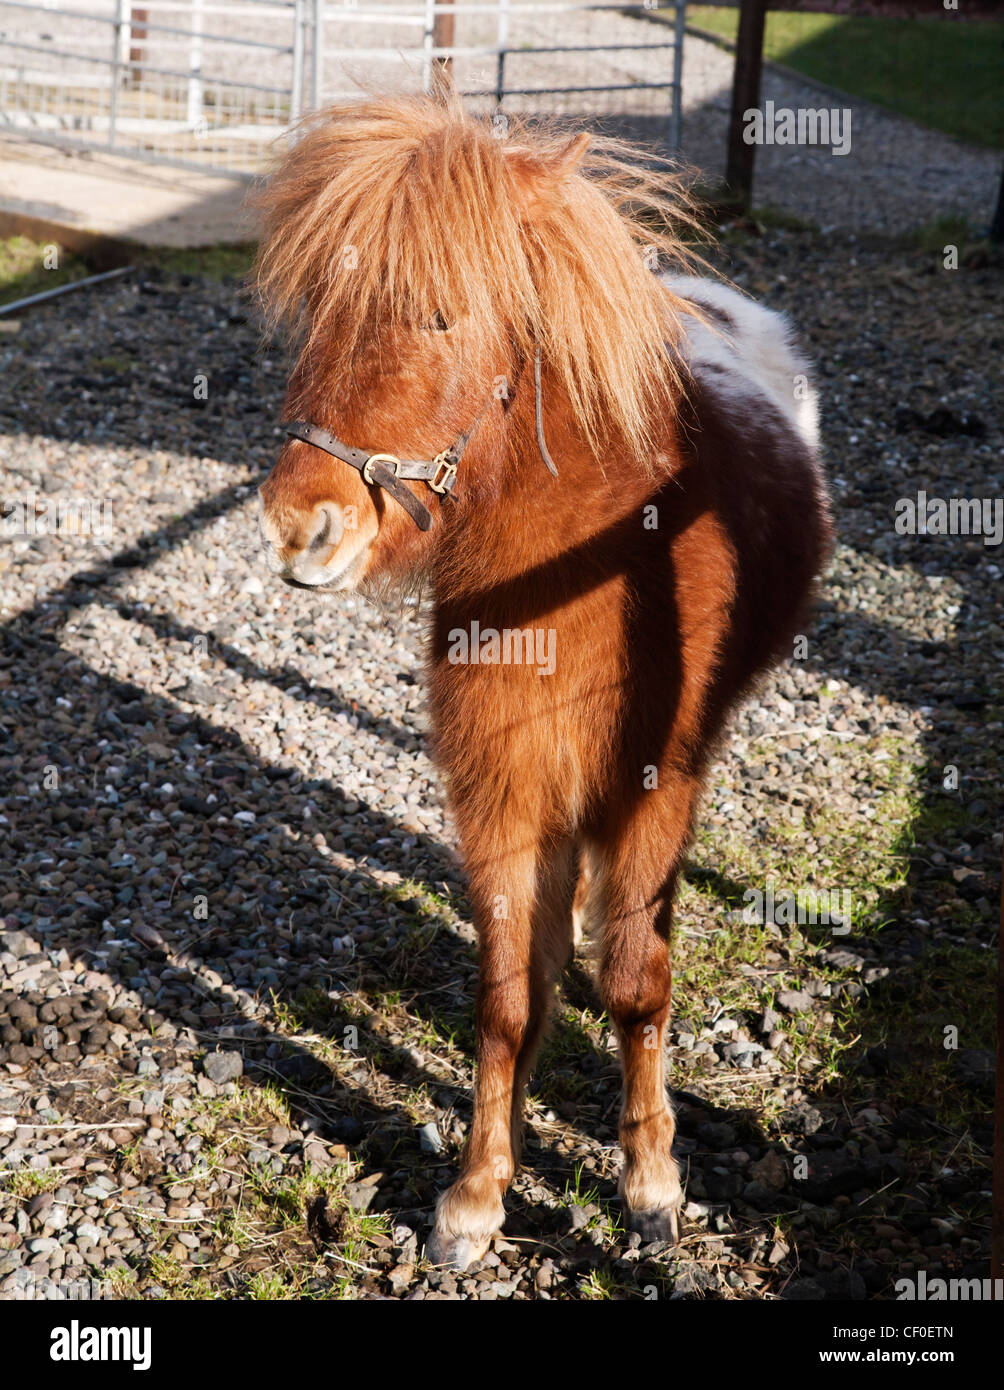 A diminutive Falabella miniature horse. Stock Photo